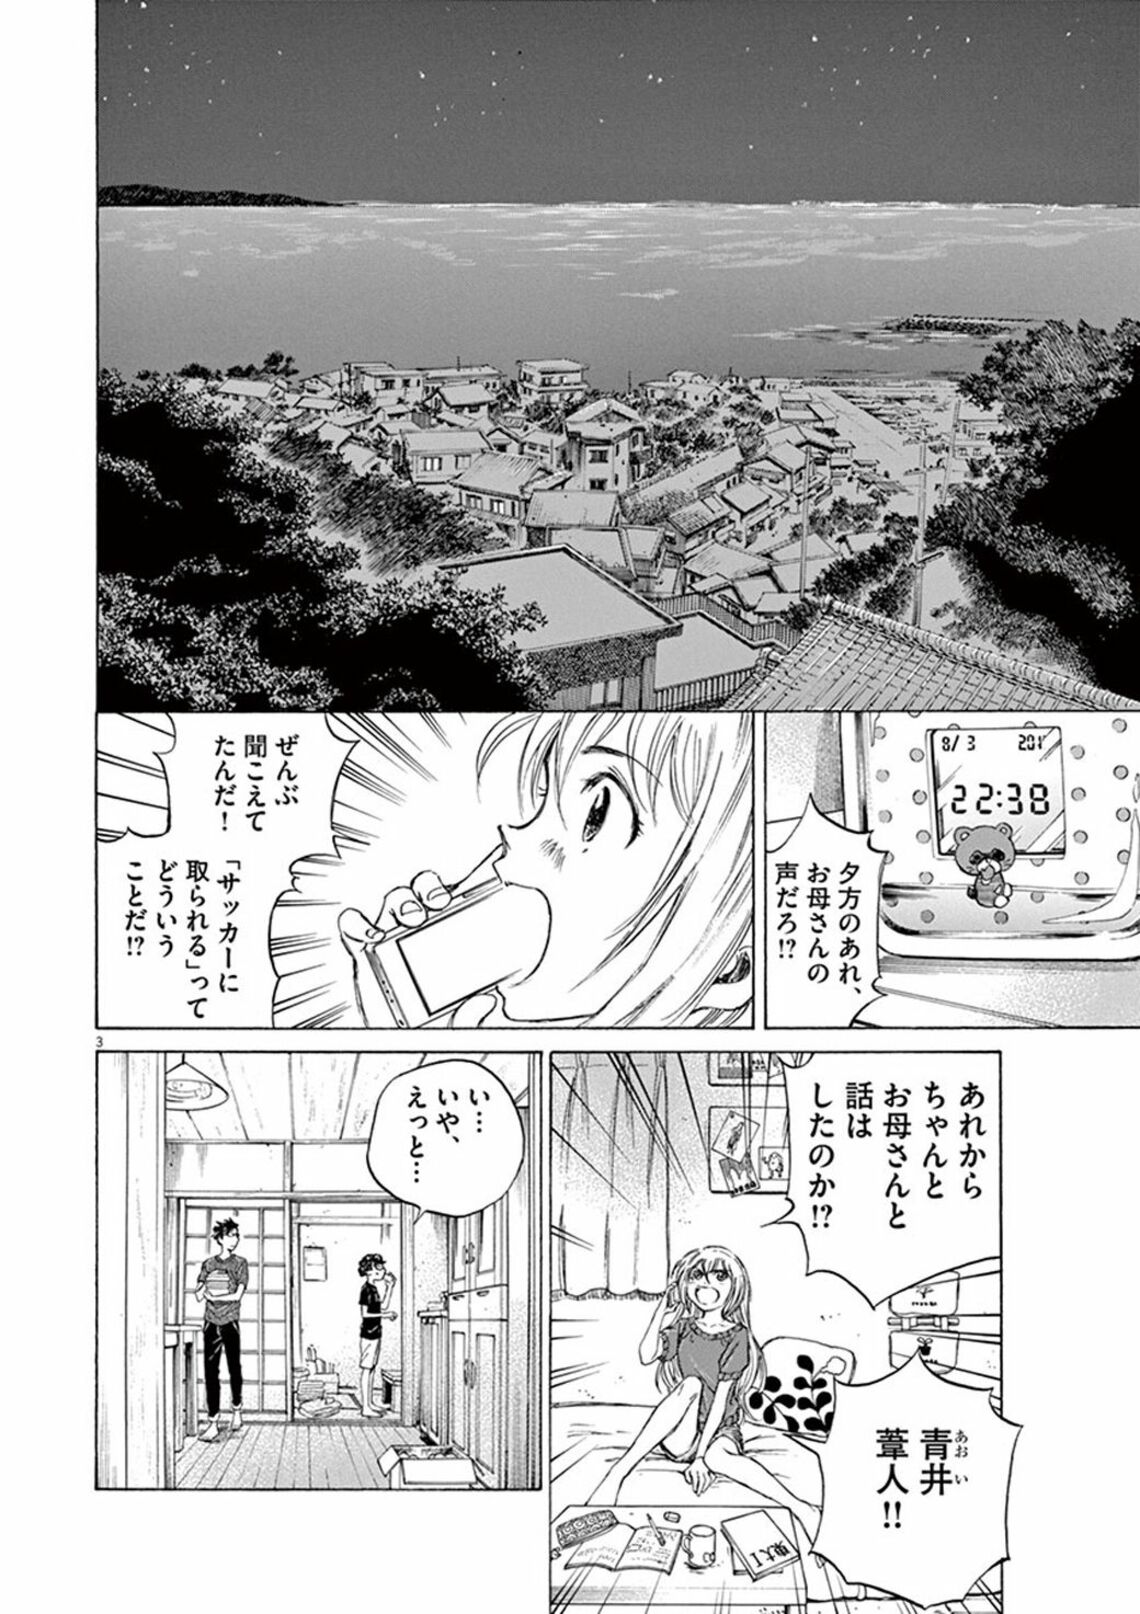 東京でプロを目指したい｣中3に母がかけた言葉 漫画｢アオアシ｣（第3集・第20話）(東洋経済オンライン) - goo ニュース